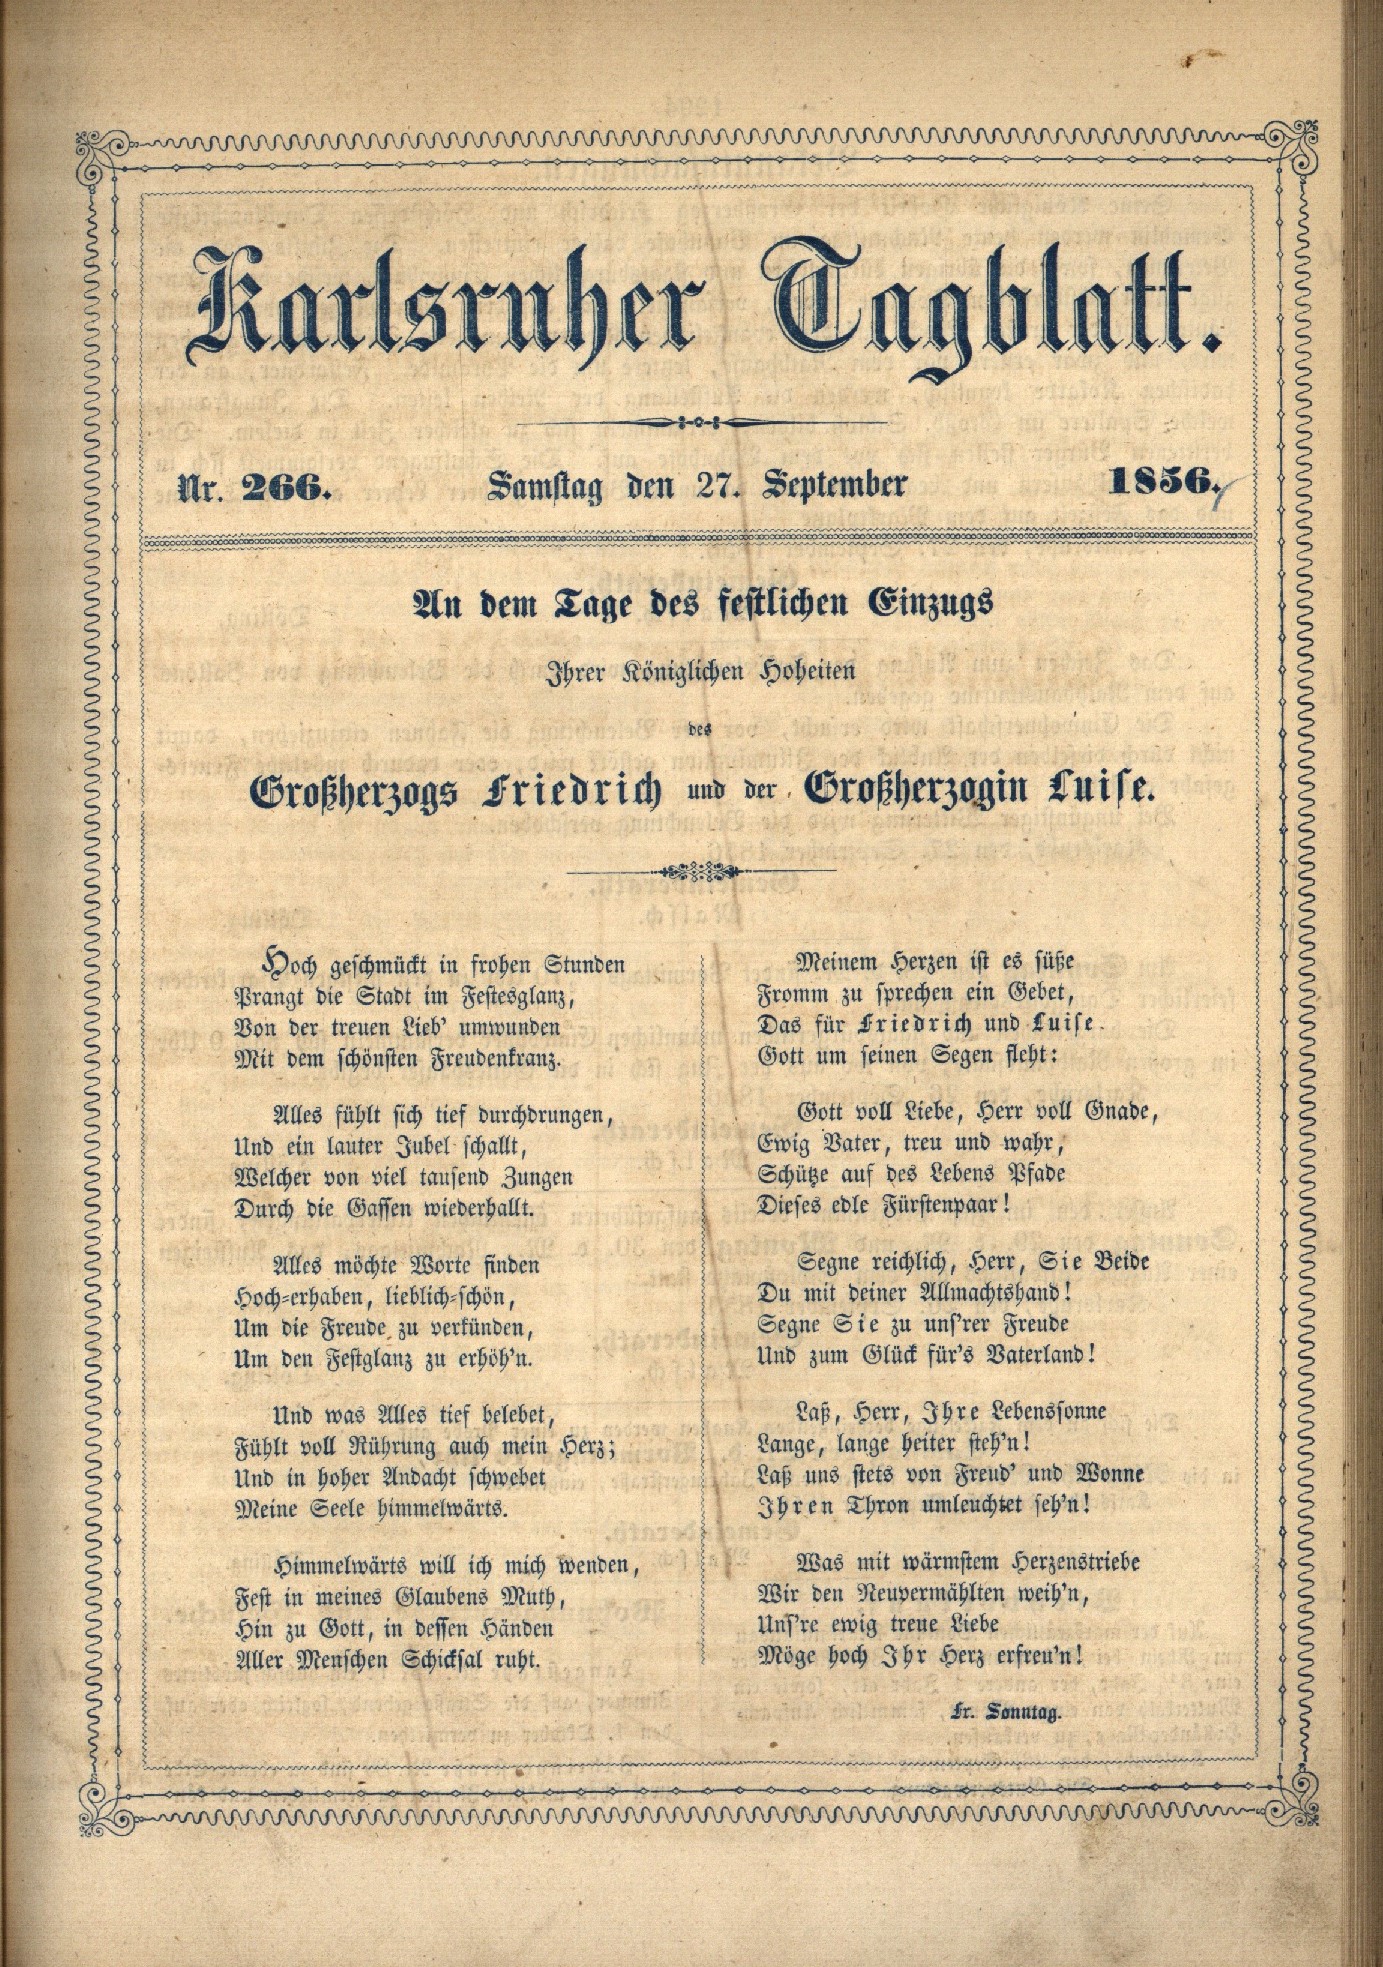 Zu sehen ist ein Digitalisat der Titelseite des Karlsruher Tagblatts mit einem Preisgedicht anlässlich des Einzugs des Großherzogpaars in Karlsruhe am 27. September 1856.